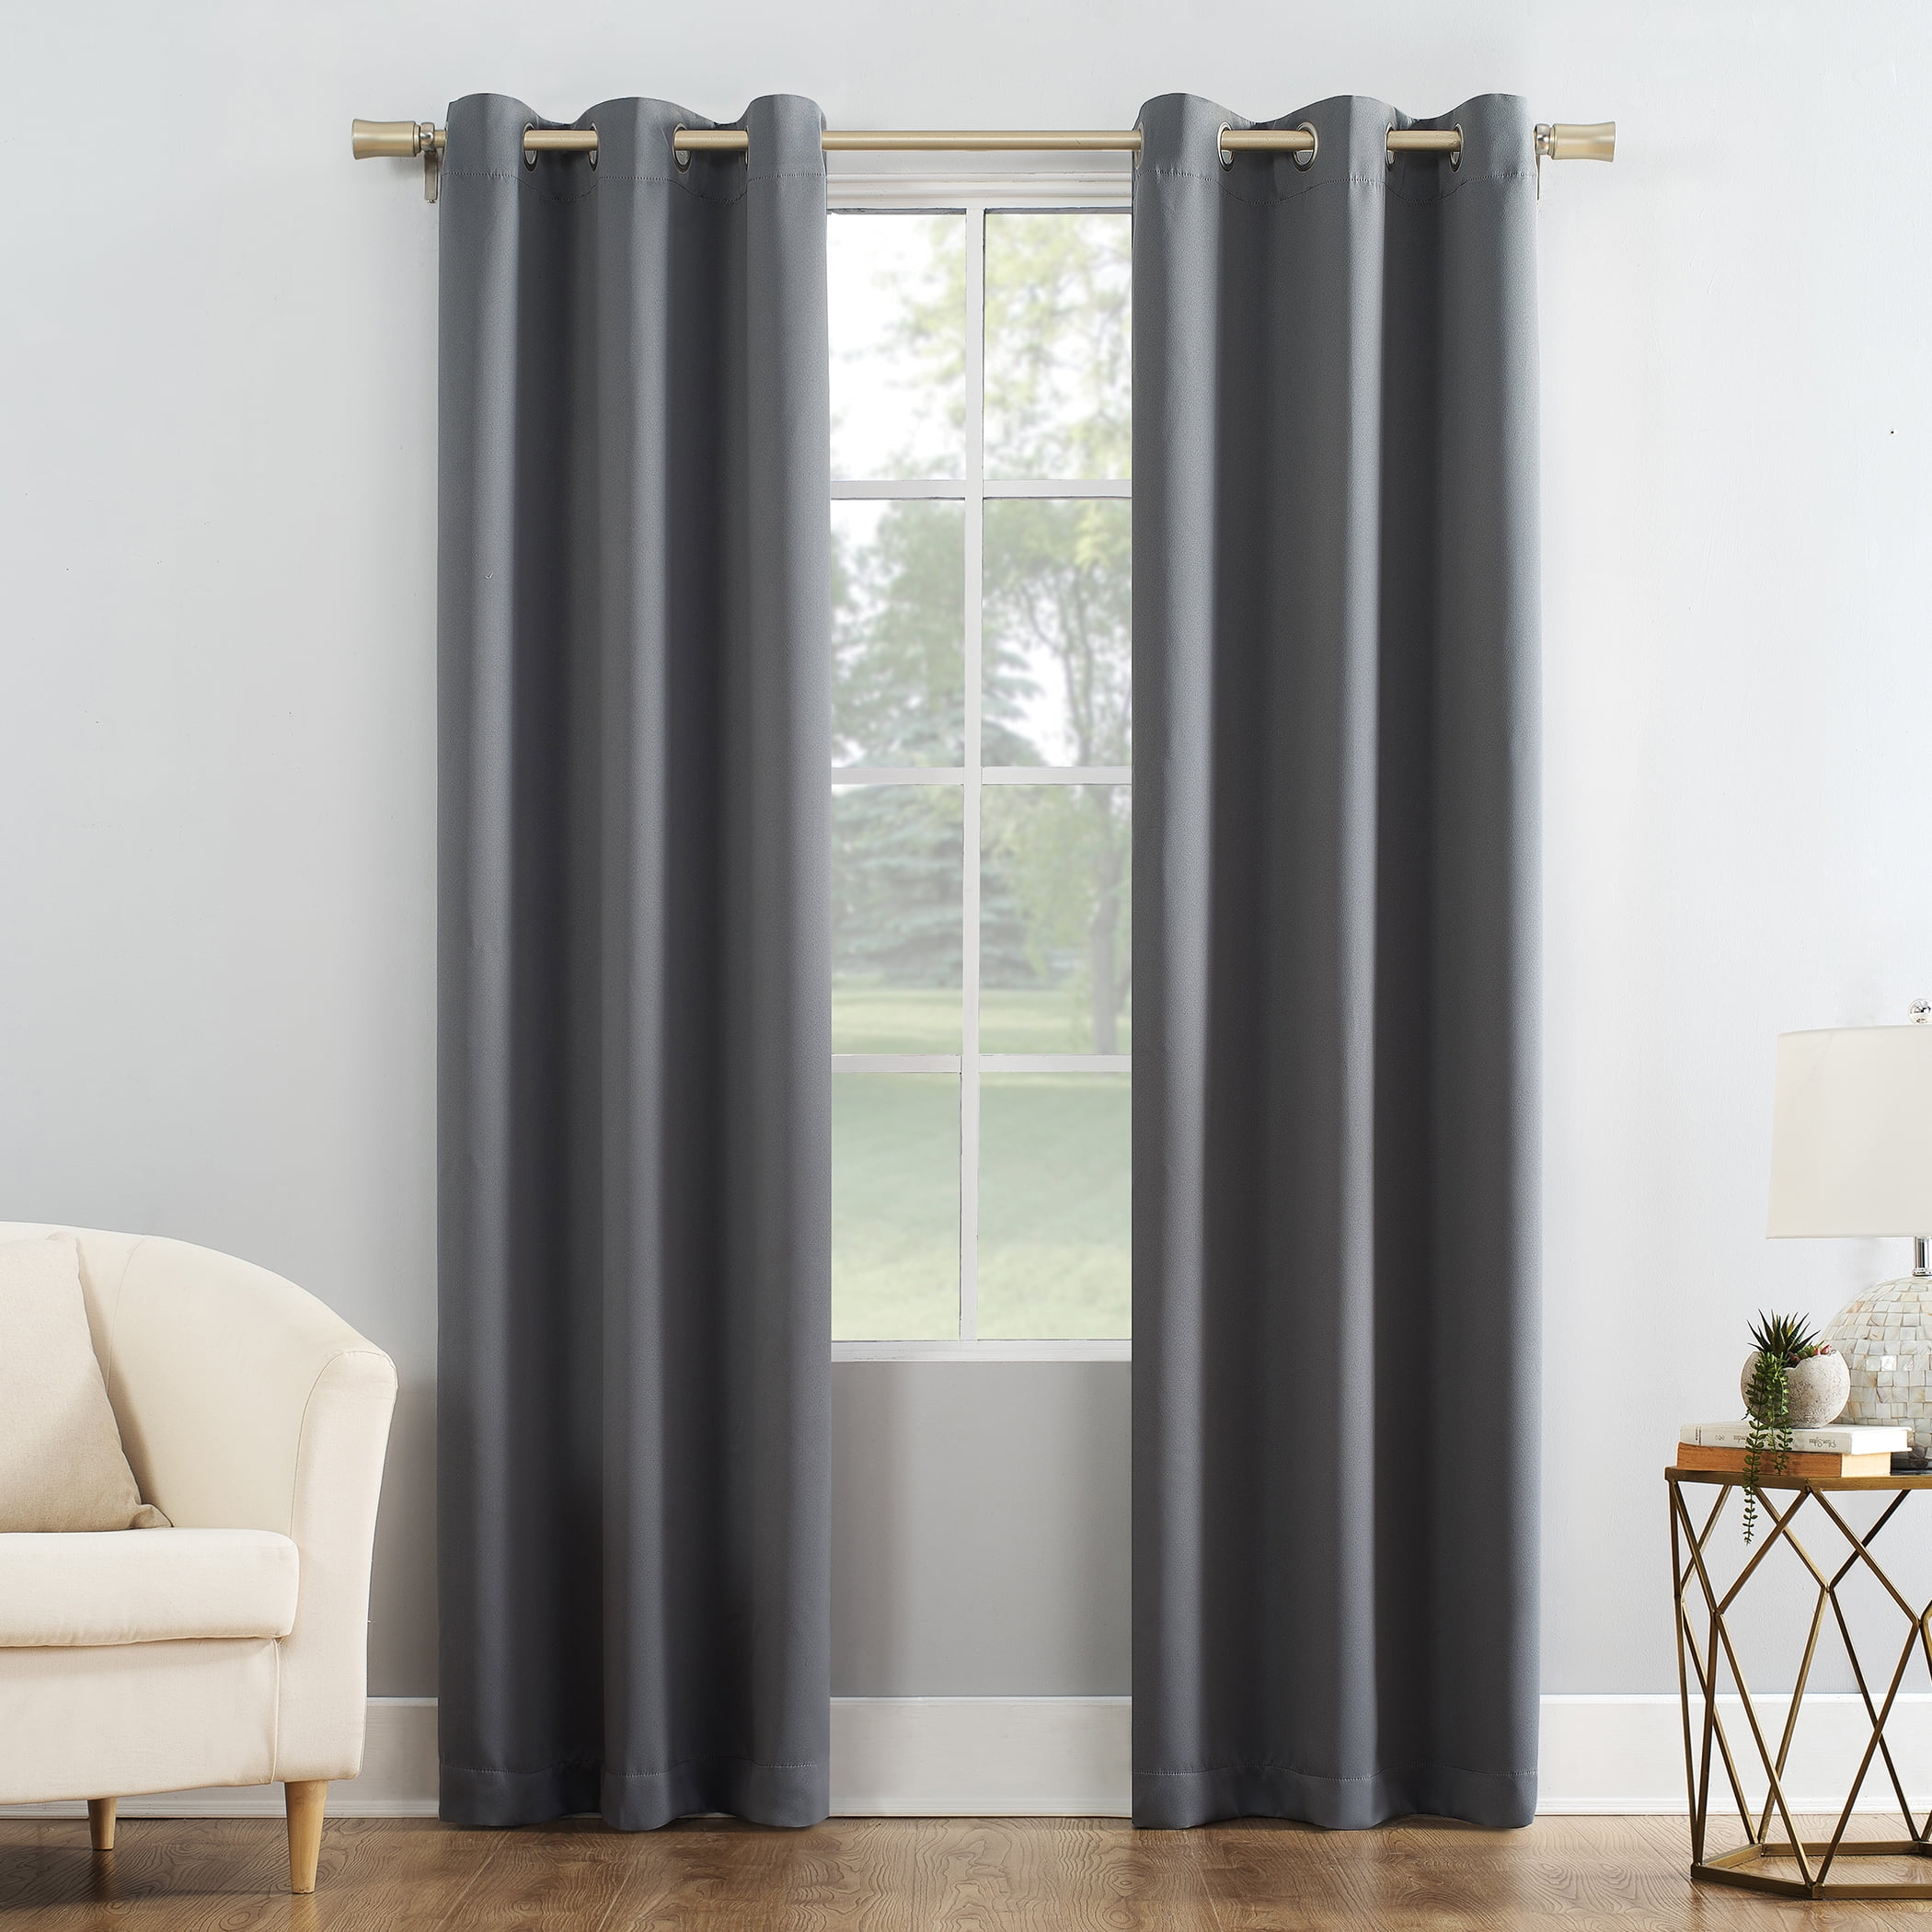 New 38" x 63" Black Blackout Energy Efficient Grommet Single Curtain Panel 